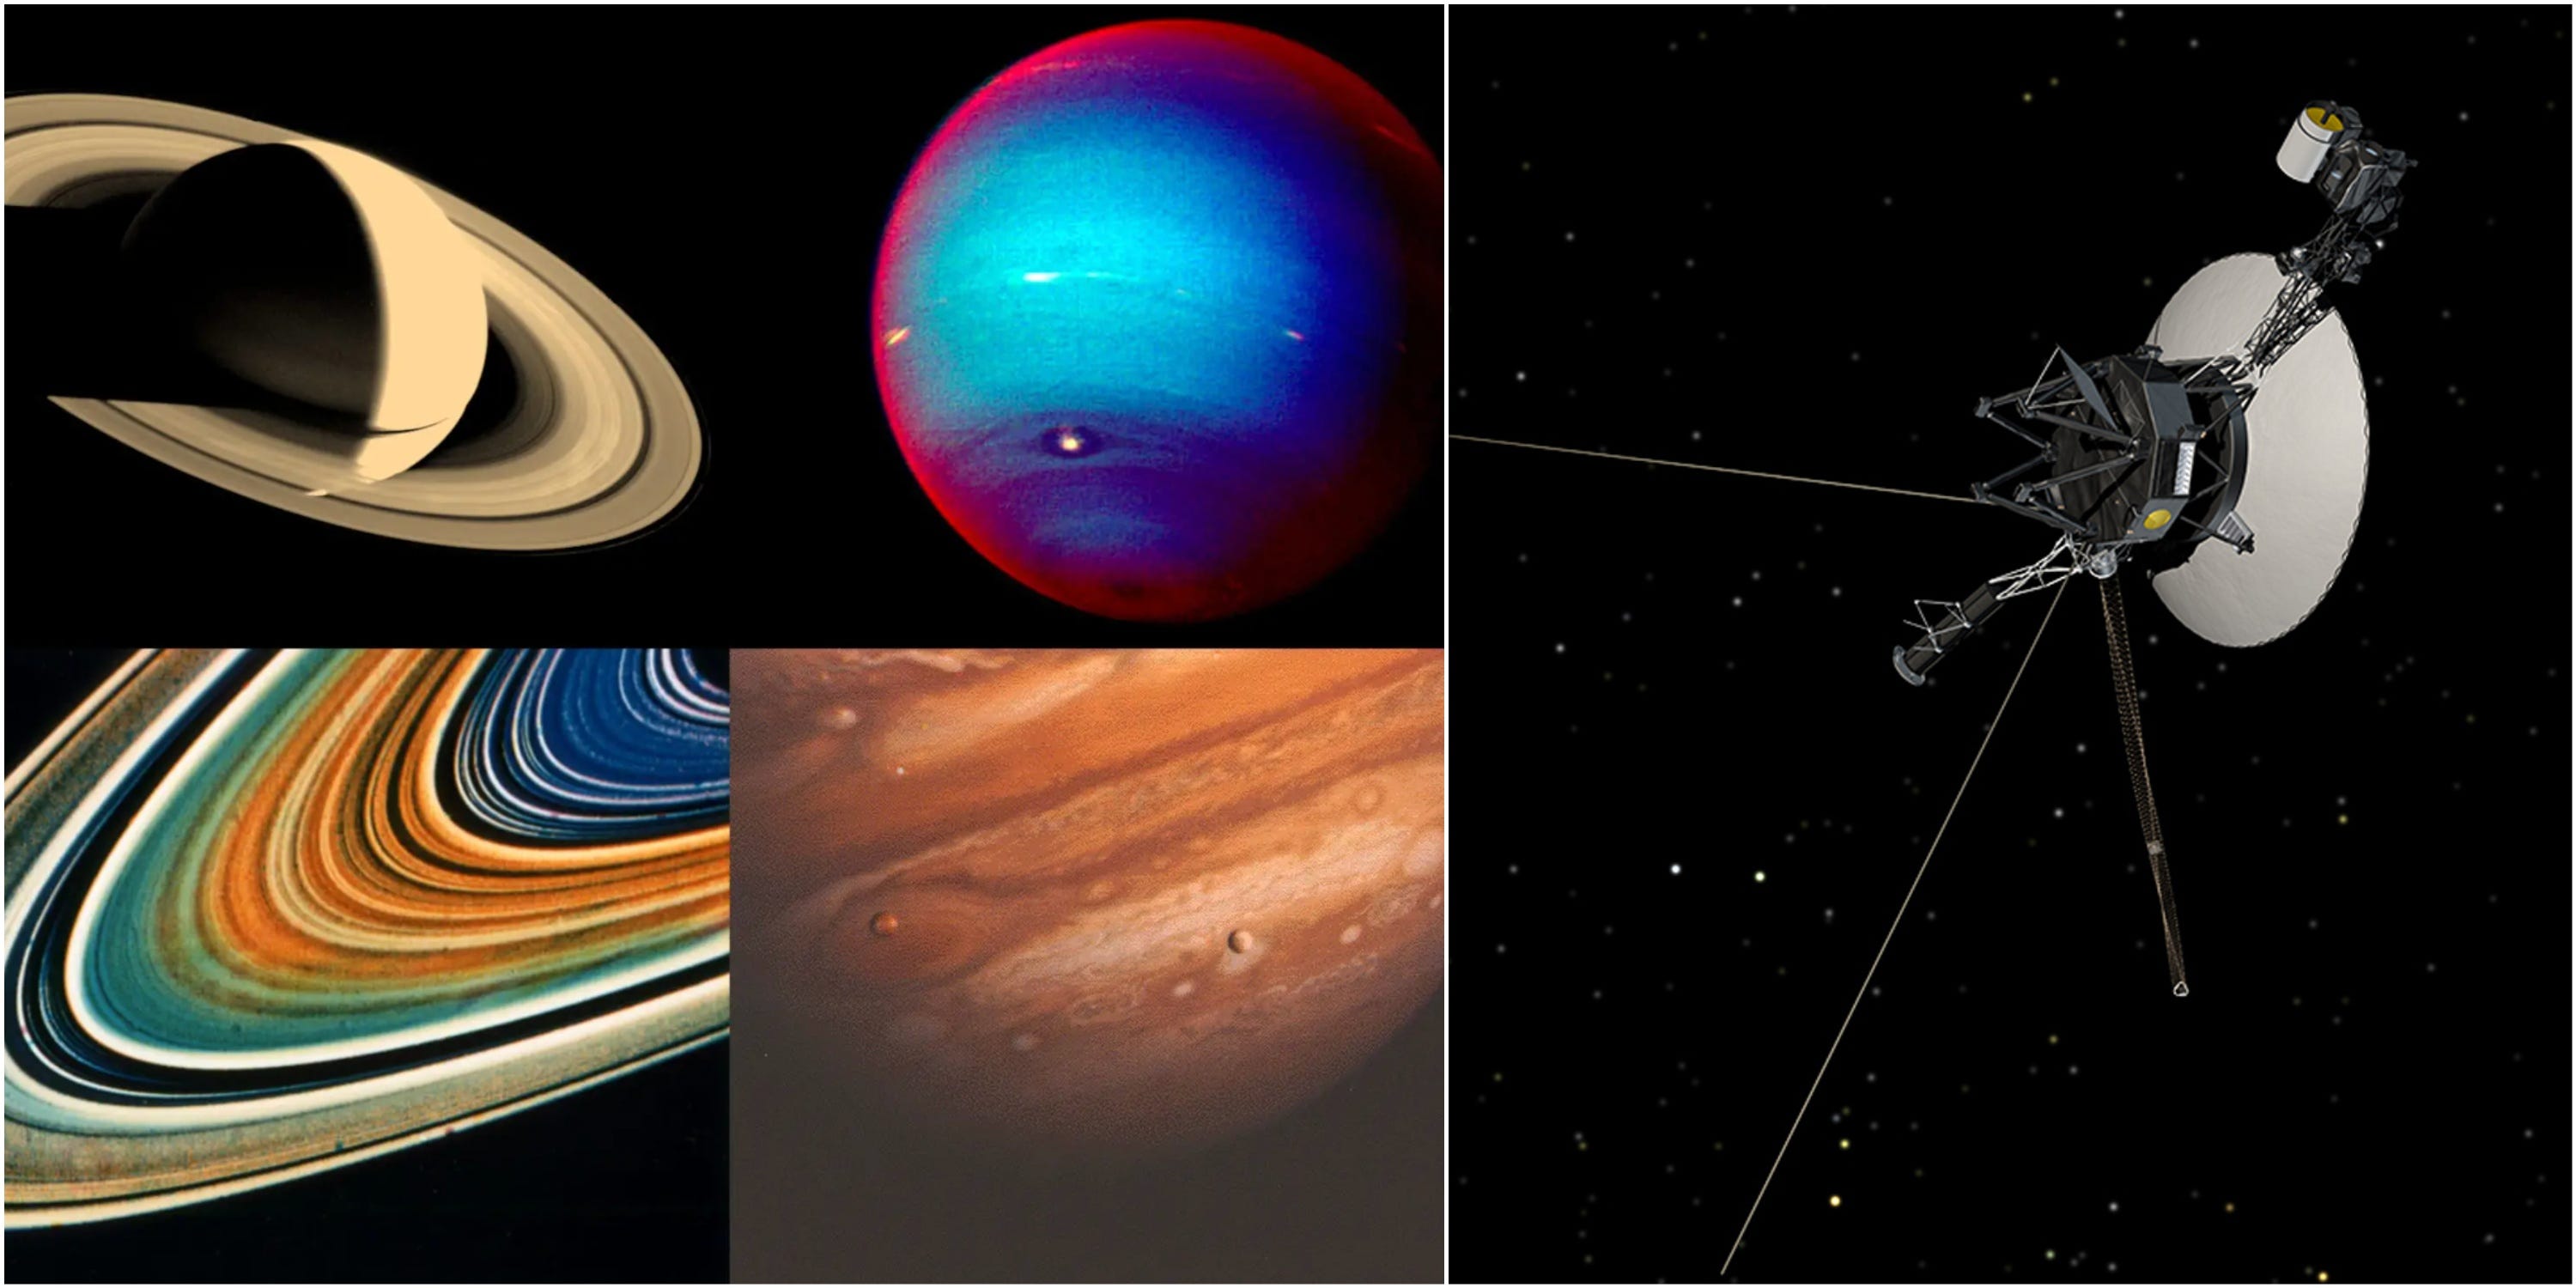 Eine Fotomontage zeigt von den Voyager-Sonden aufgenommene Bilder neben einer Illustration, wie die Voyager-Sonden aussehen.